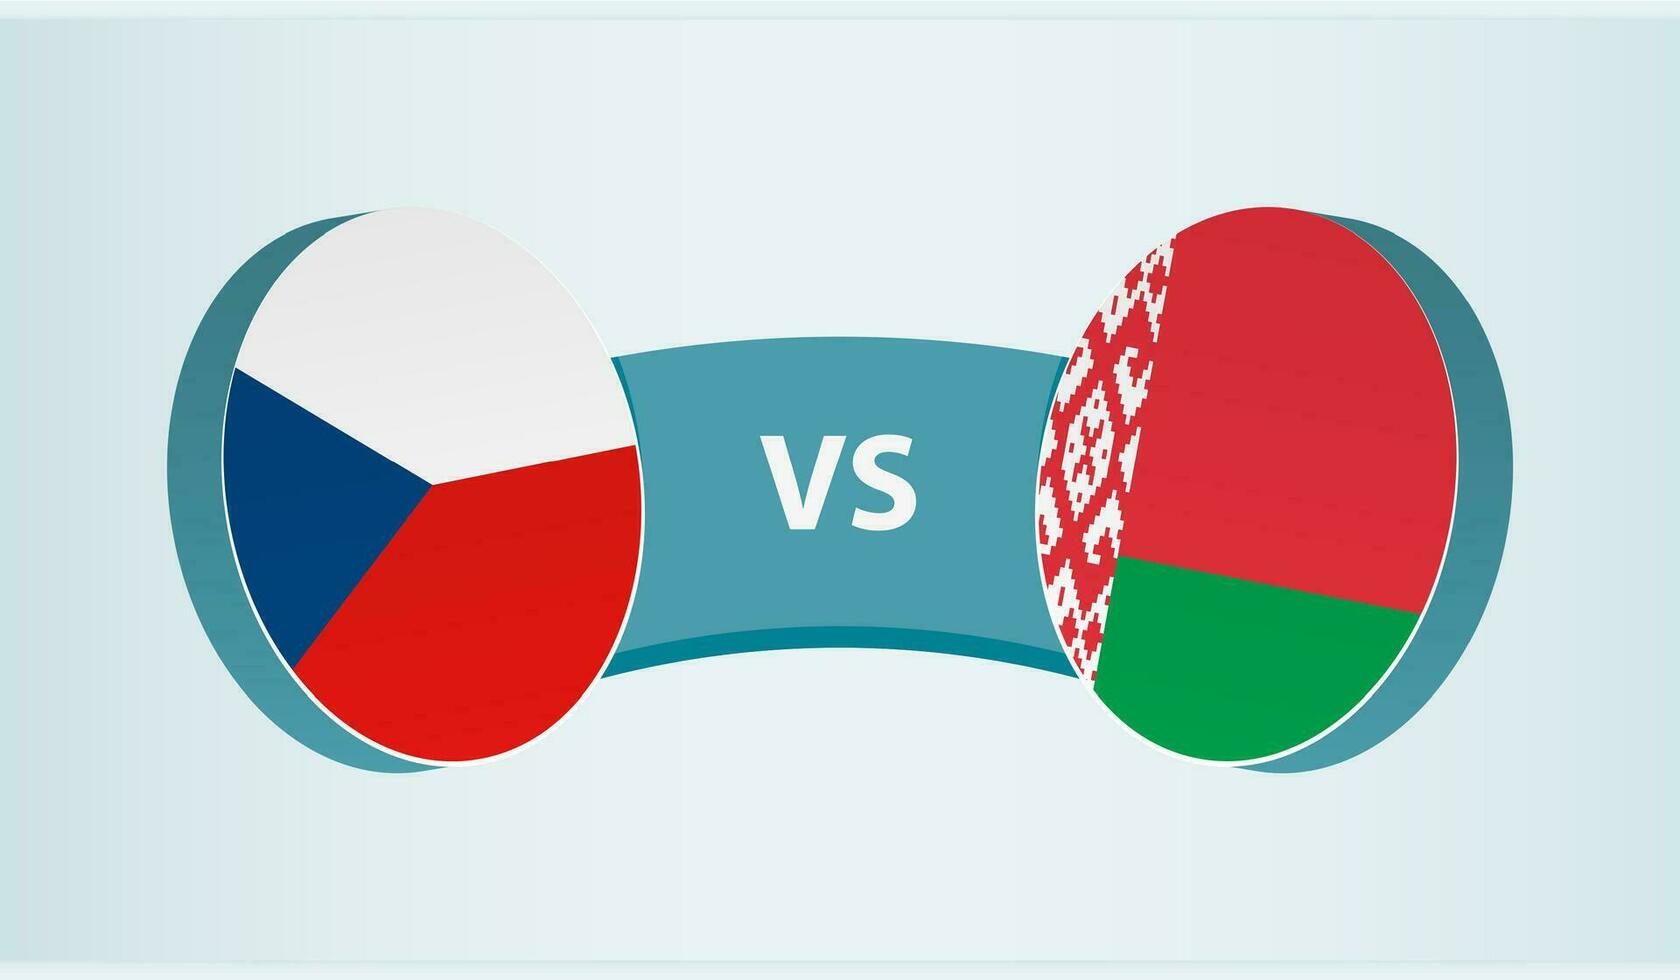 Czech Republic versus Belarus, team sports competition concept. vector